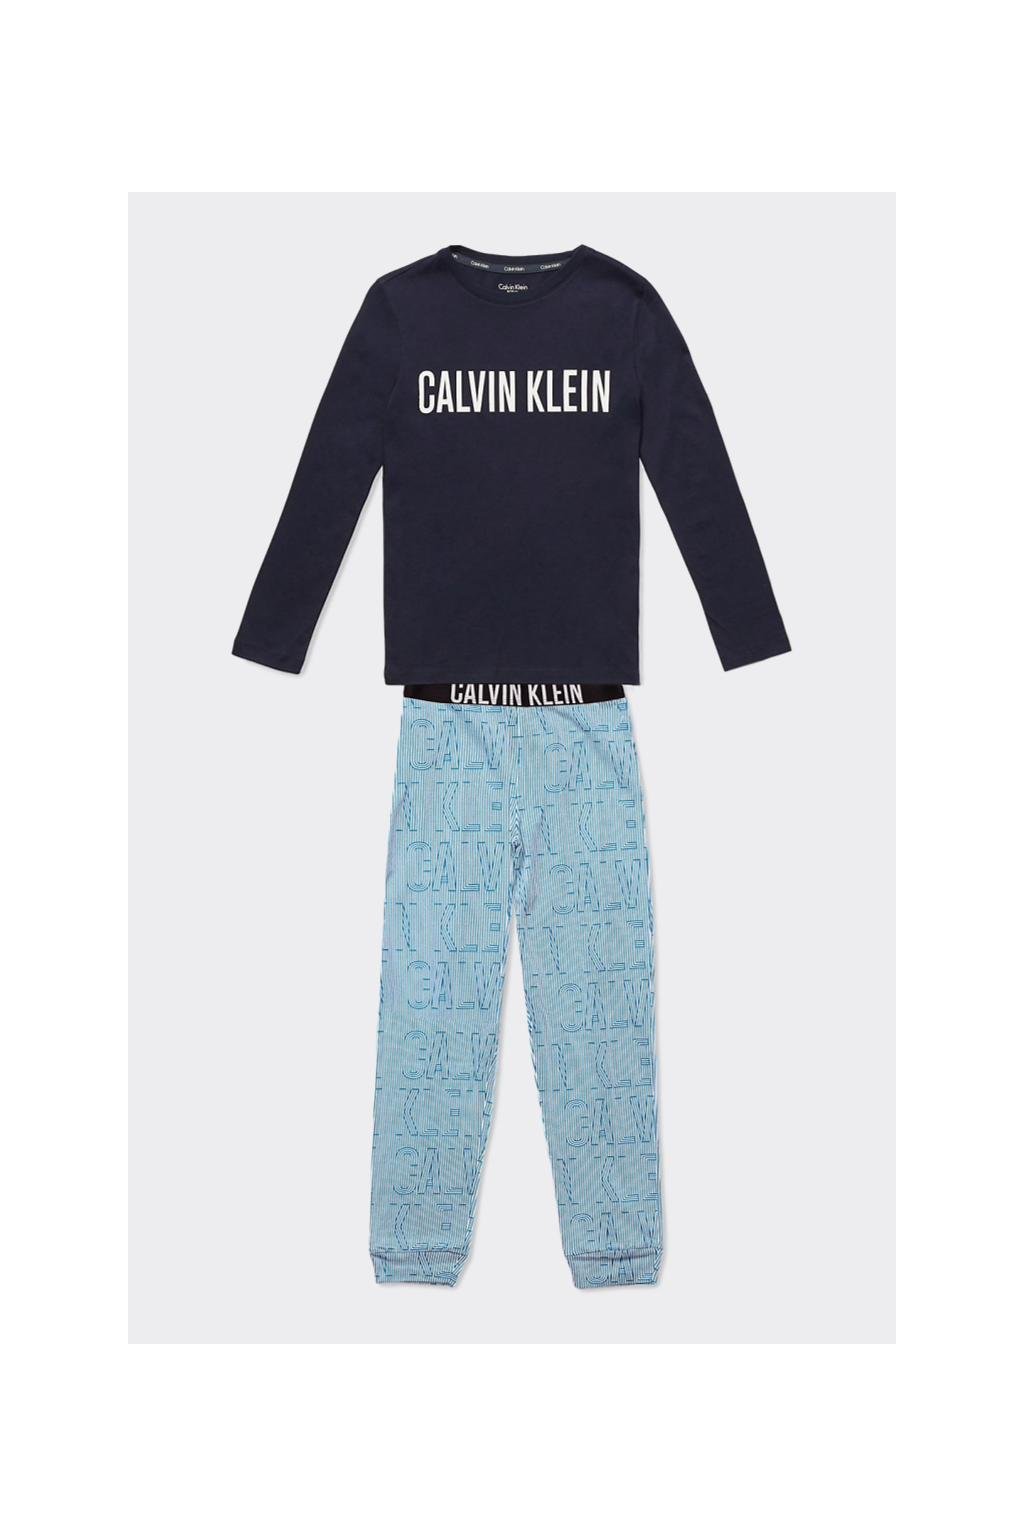 PRO DĚTI! Calvin Klein pyžamo BOYS- modré